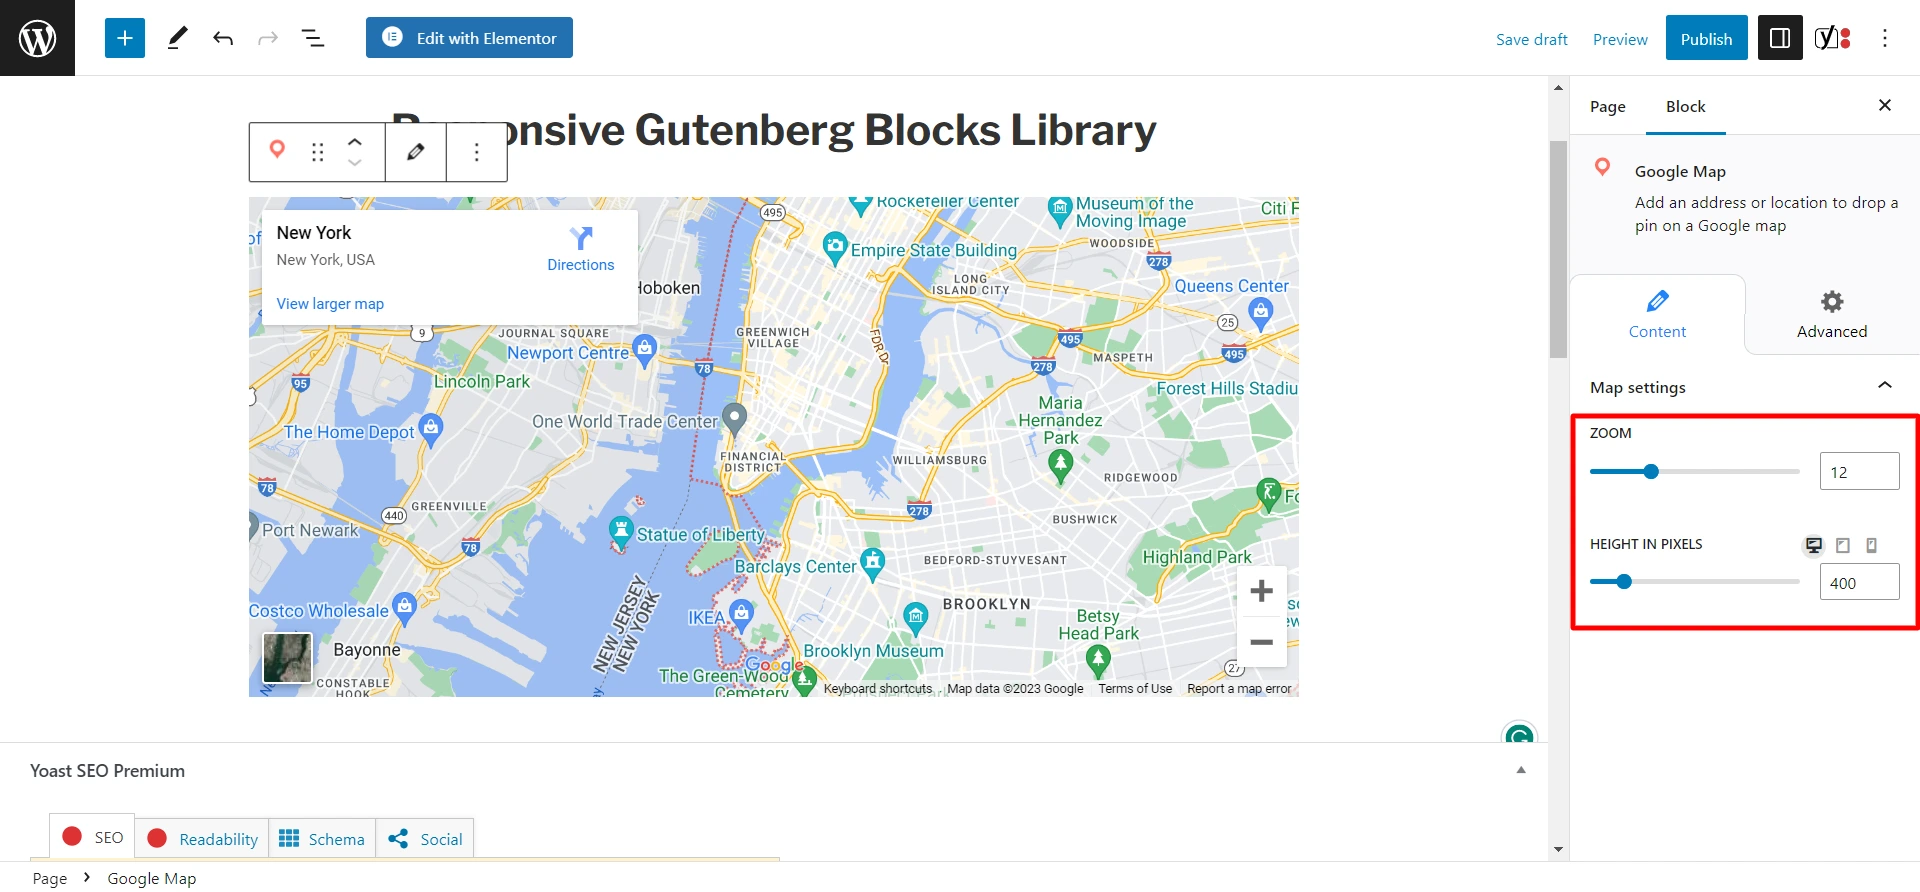 RBEA Google Map Block- Map Settings